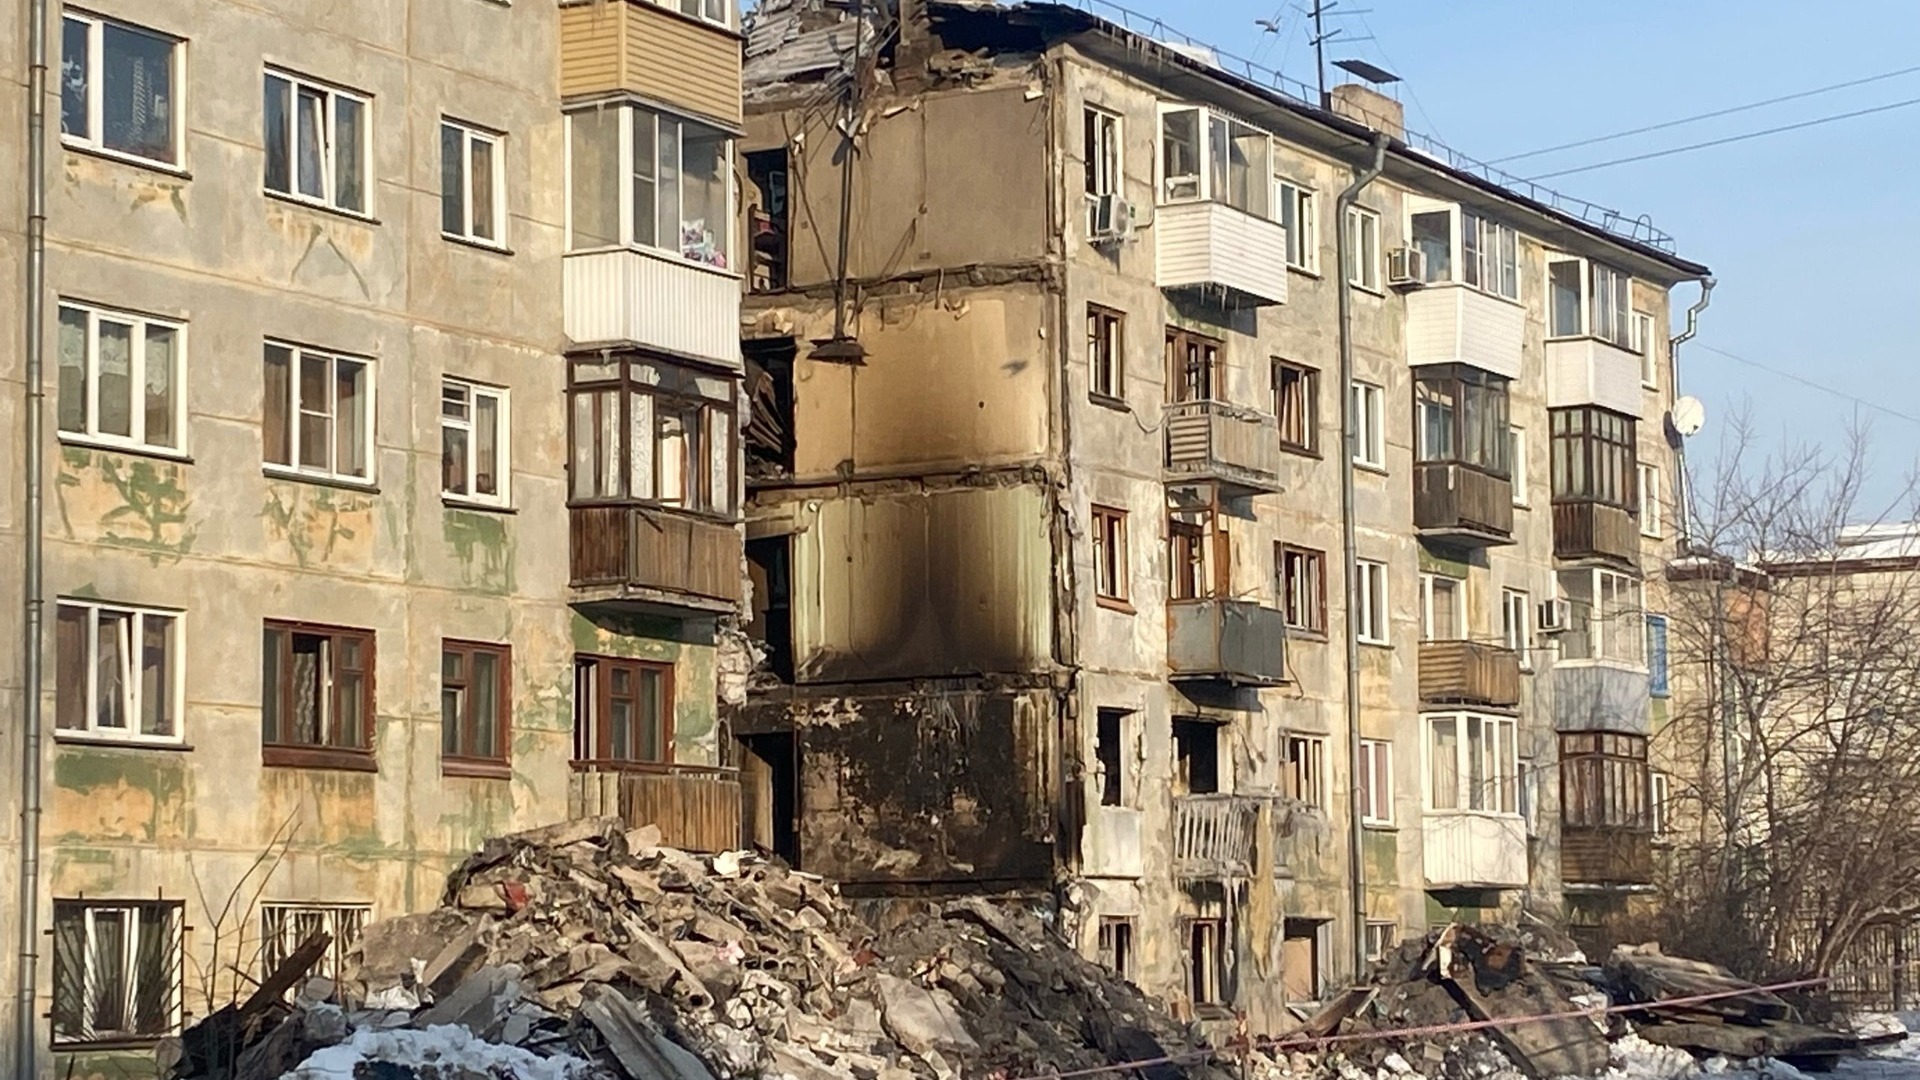 Дом на ул. Линейная, который взорвался 9 февраля 2023 года в Новосибирске.